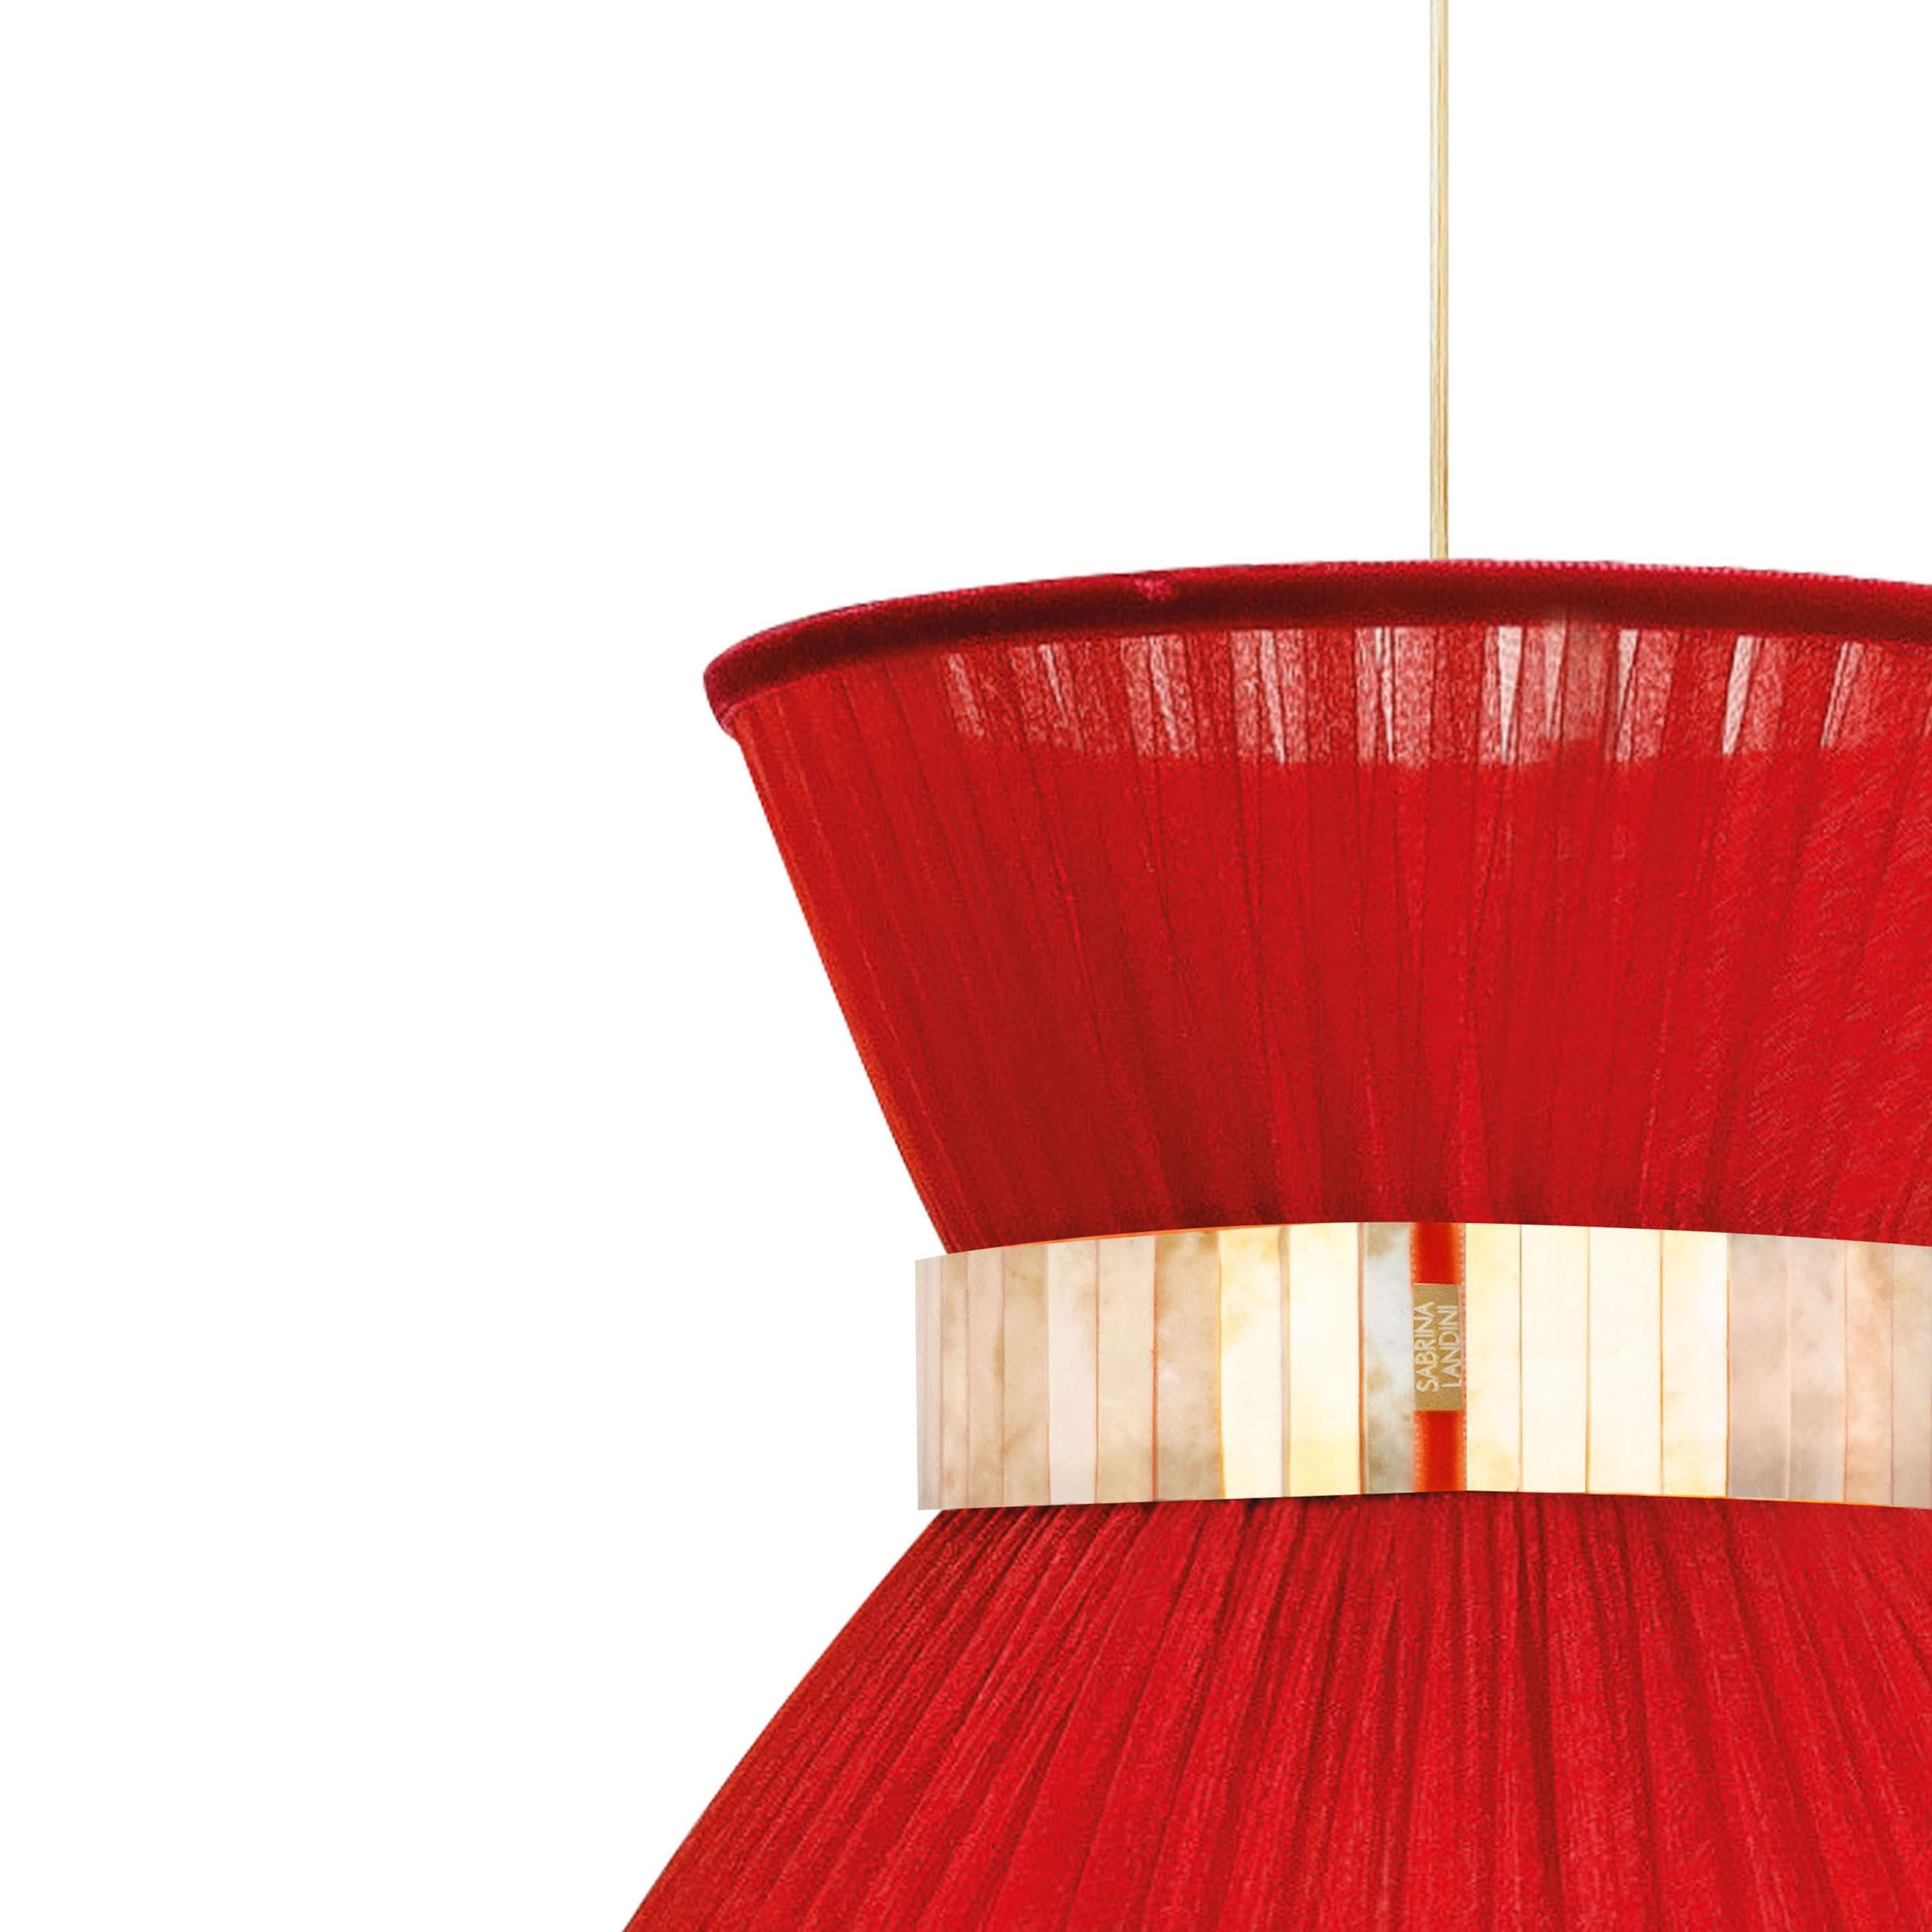 TIFFANY Die ikonische Lampe!

Seit 20 Jahren haben wir unsere einzigartige Herstellungsmethode beibehalten. Inspiriert von den unbegrenzten Spiegelungen im Glas hat Sabrina Landini eine elegante Wohnkollektion entworfen.
Falls Sie sich in der